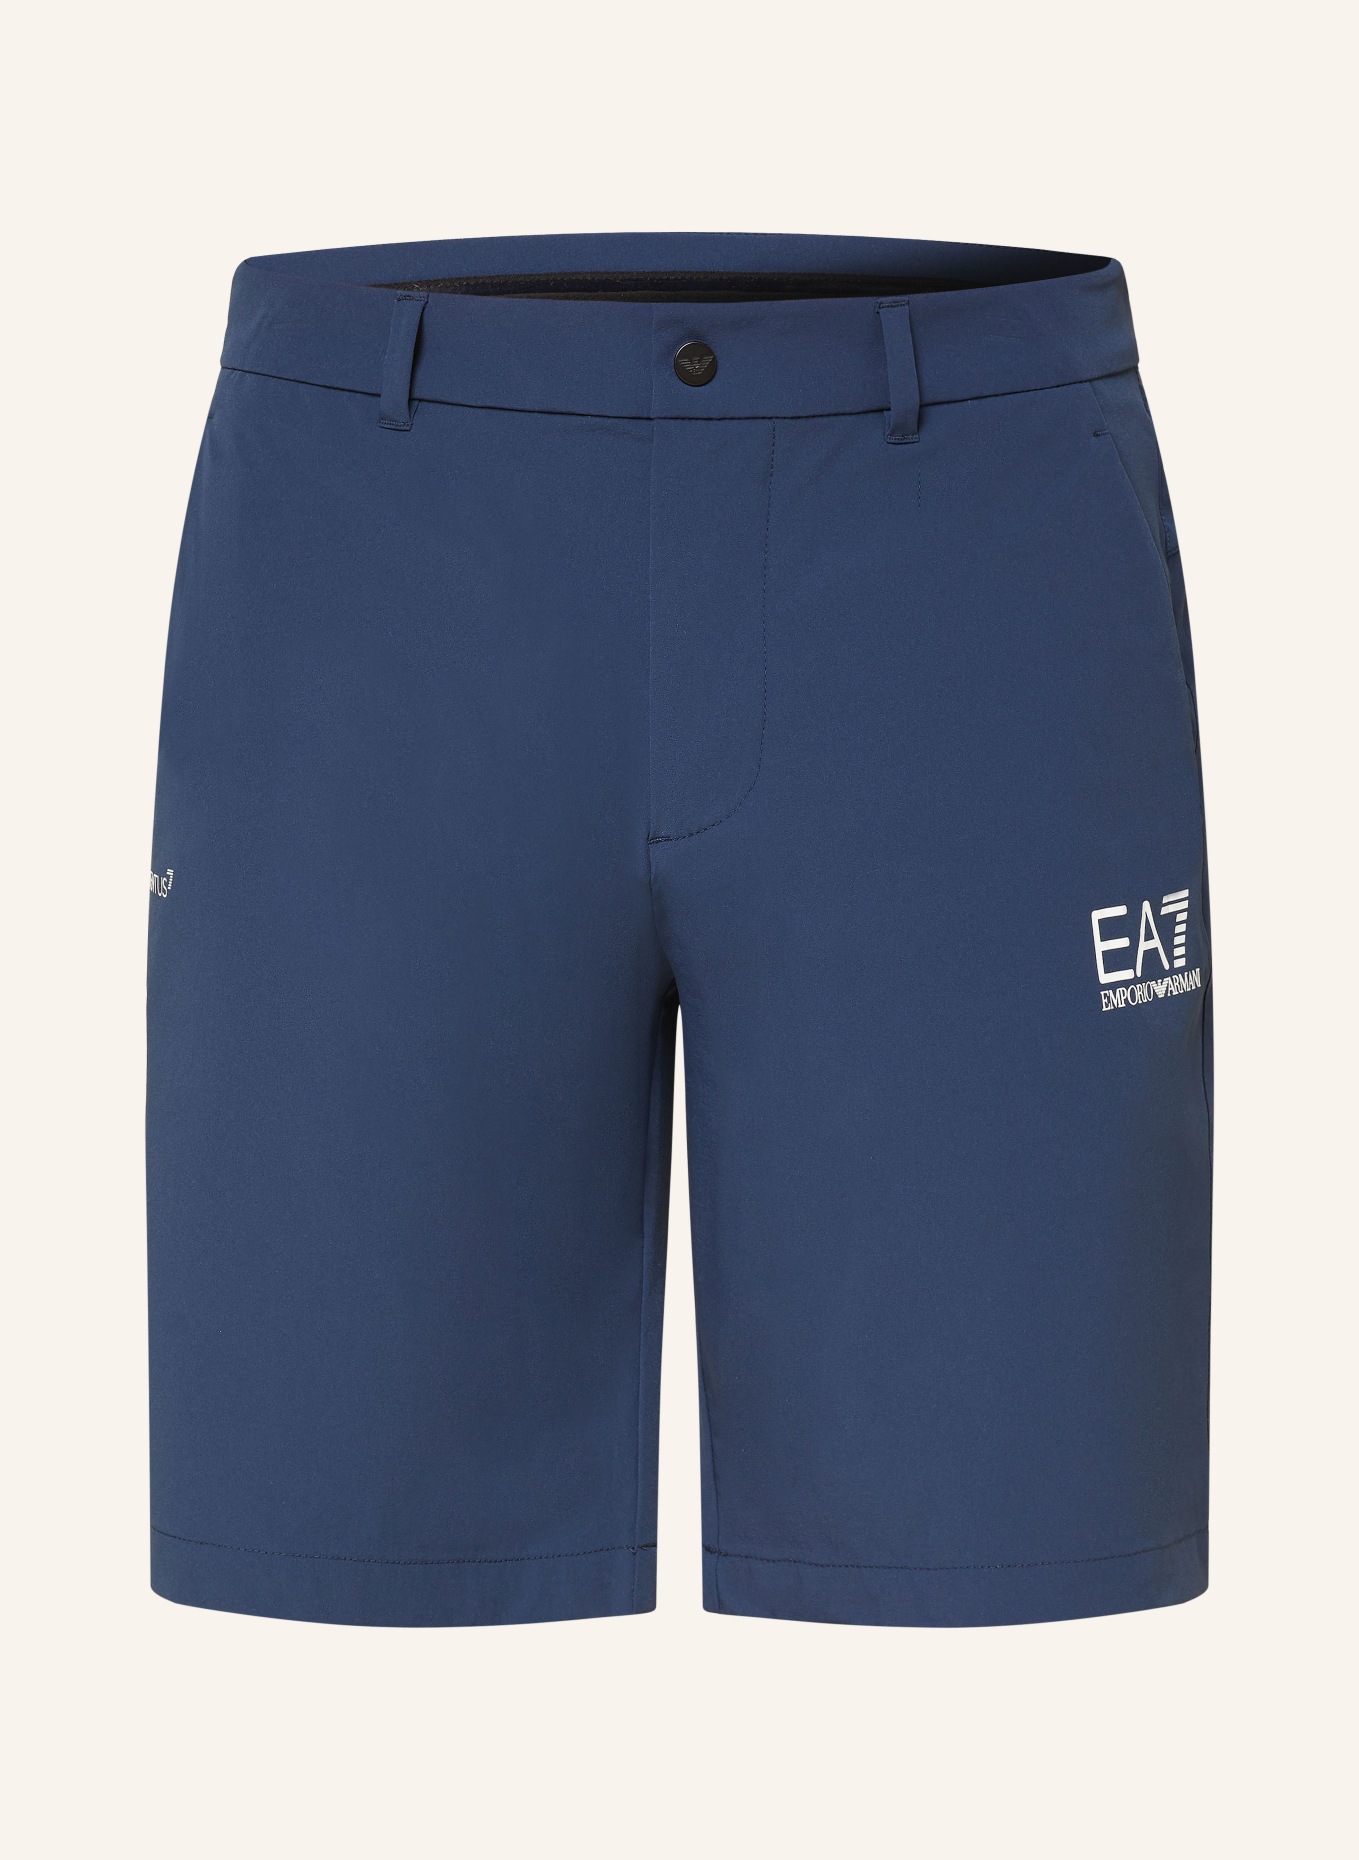 EA7 EMPORIO ARMANI Golf shorts, Color: DARK BLUE (Image 1)